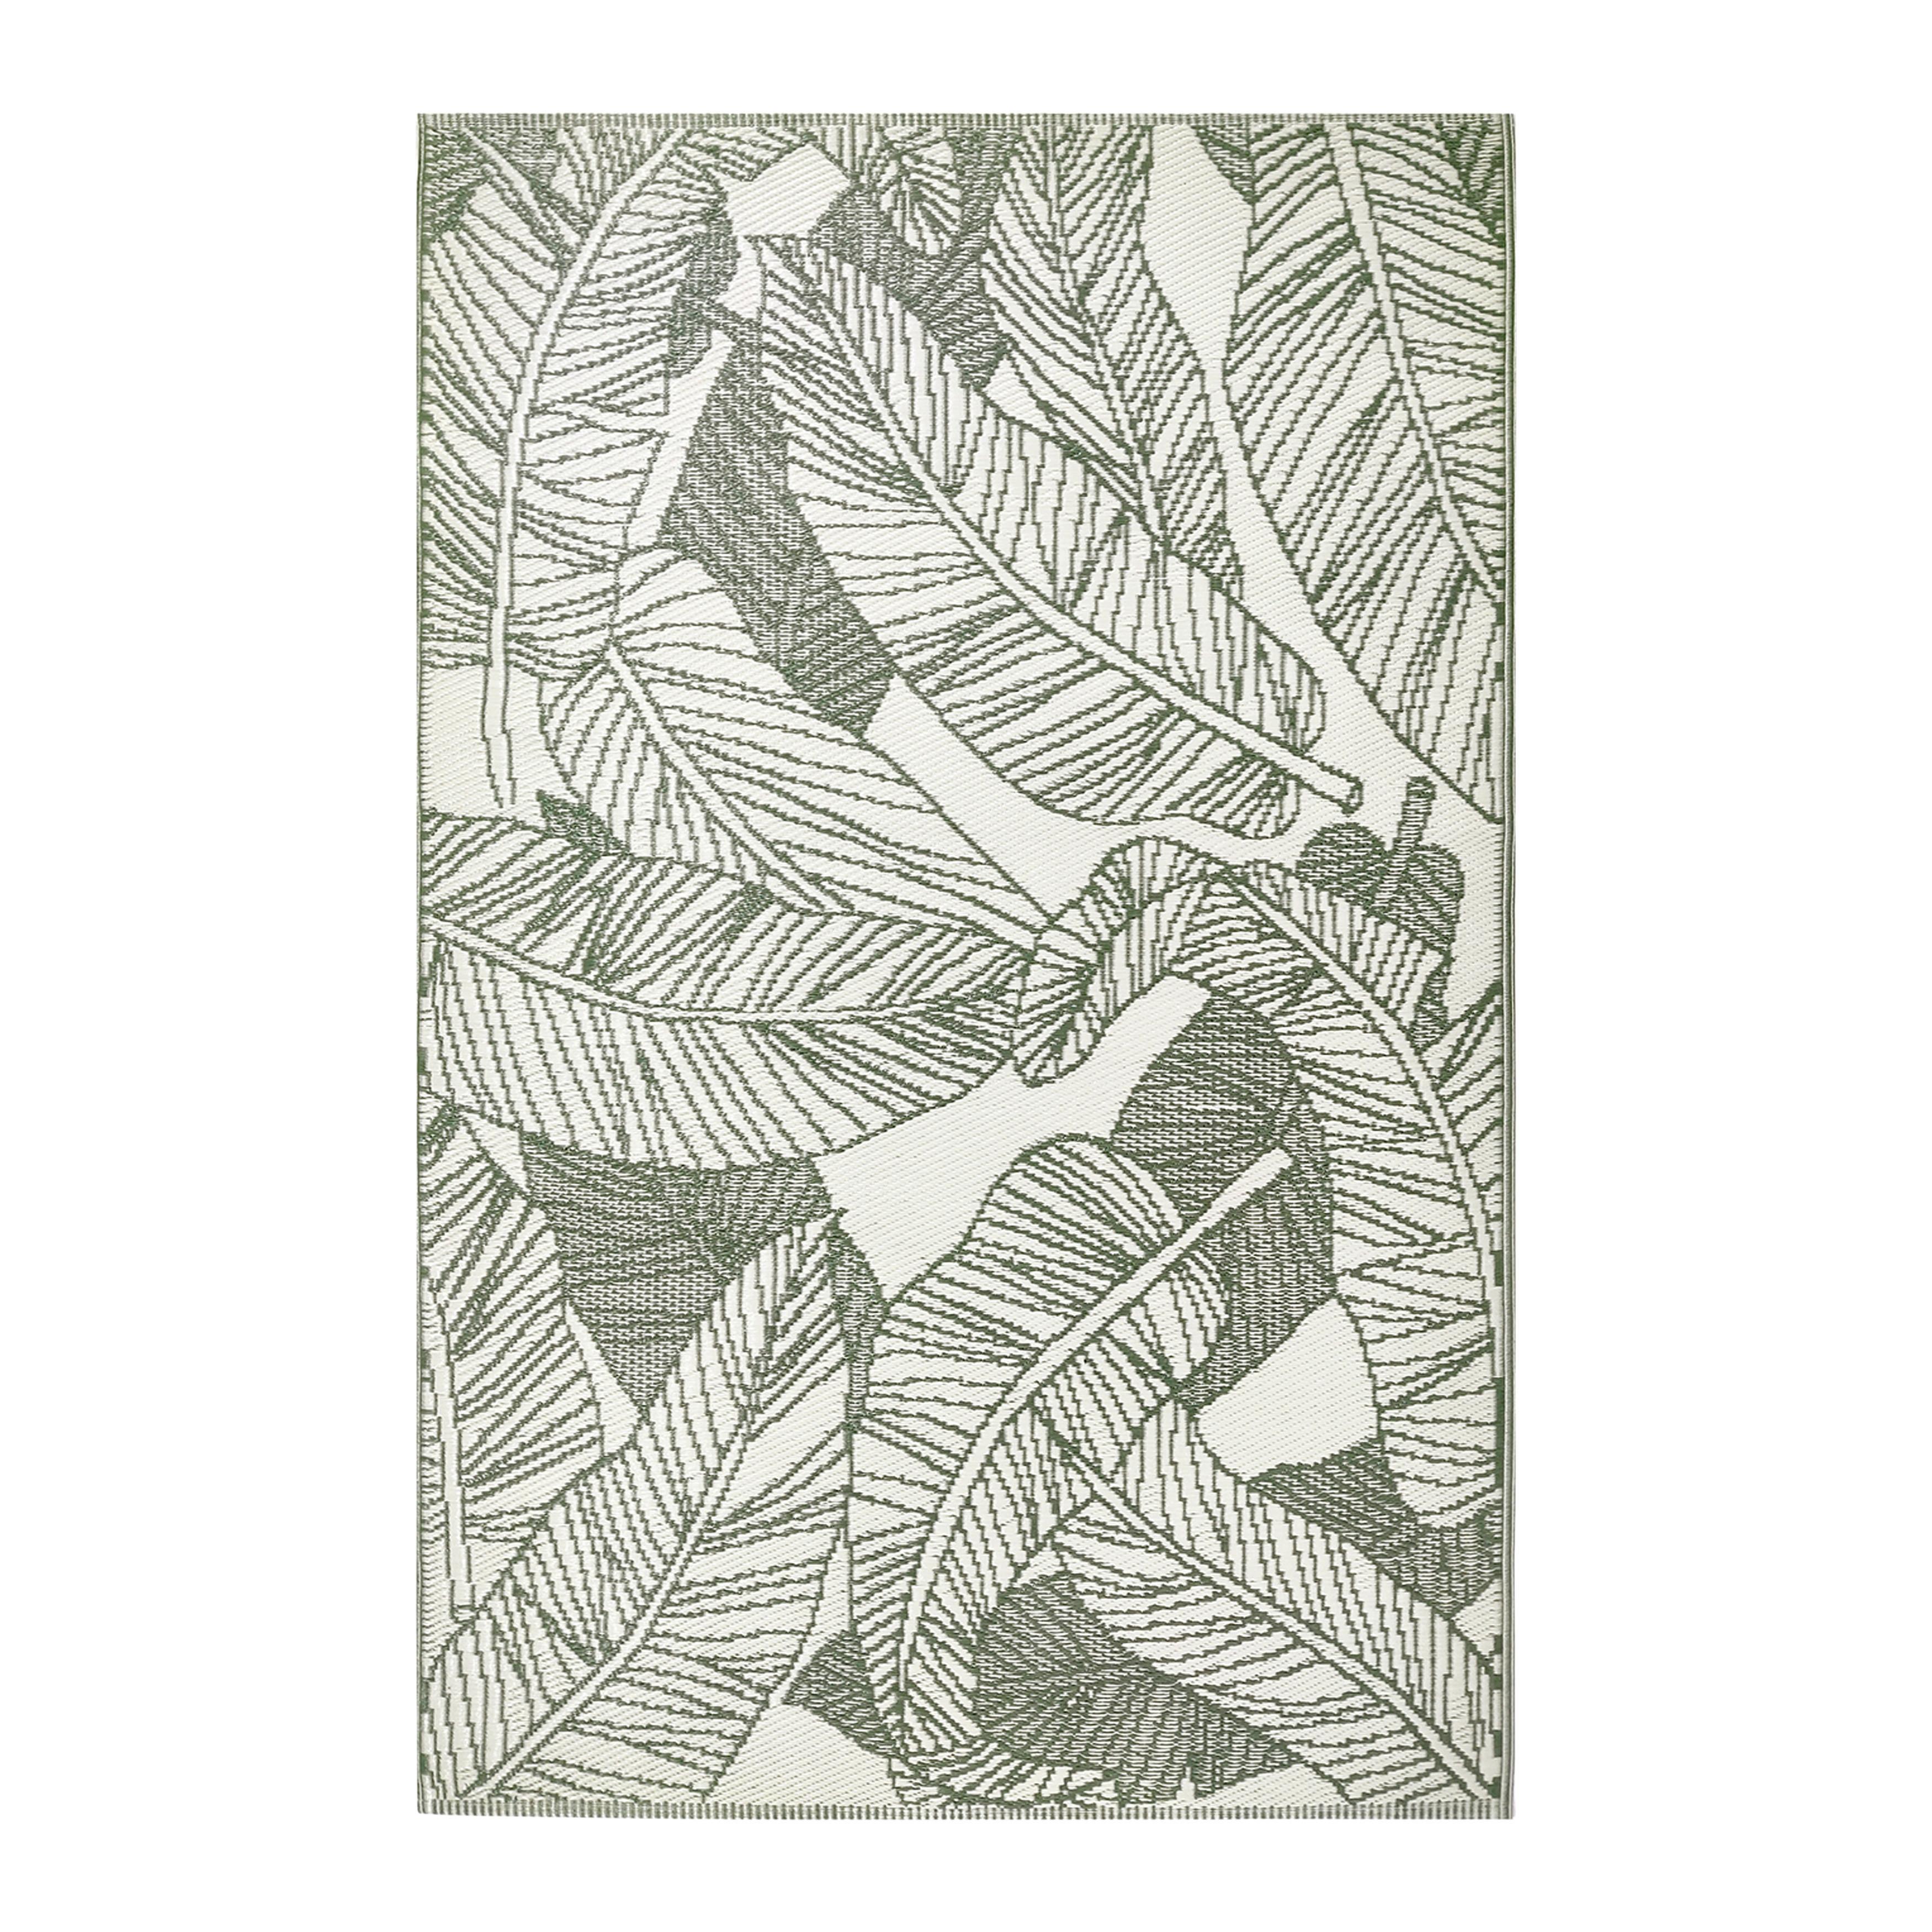 Outdoorteppich Palmiro in Olivgrün/Beige ca.120x170cm - Beige/Olivgrün, KONVENTIONELL, Textil (120/170cm) - Bessagi Home